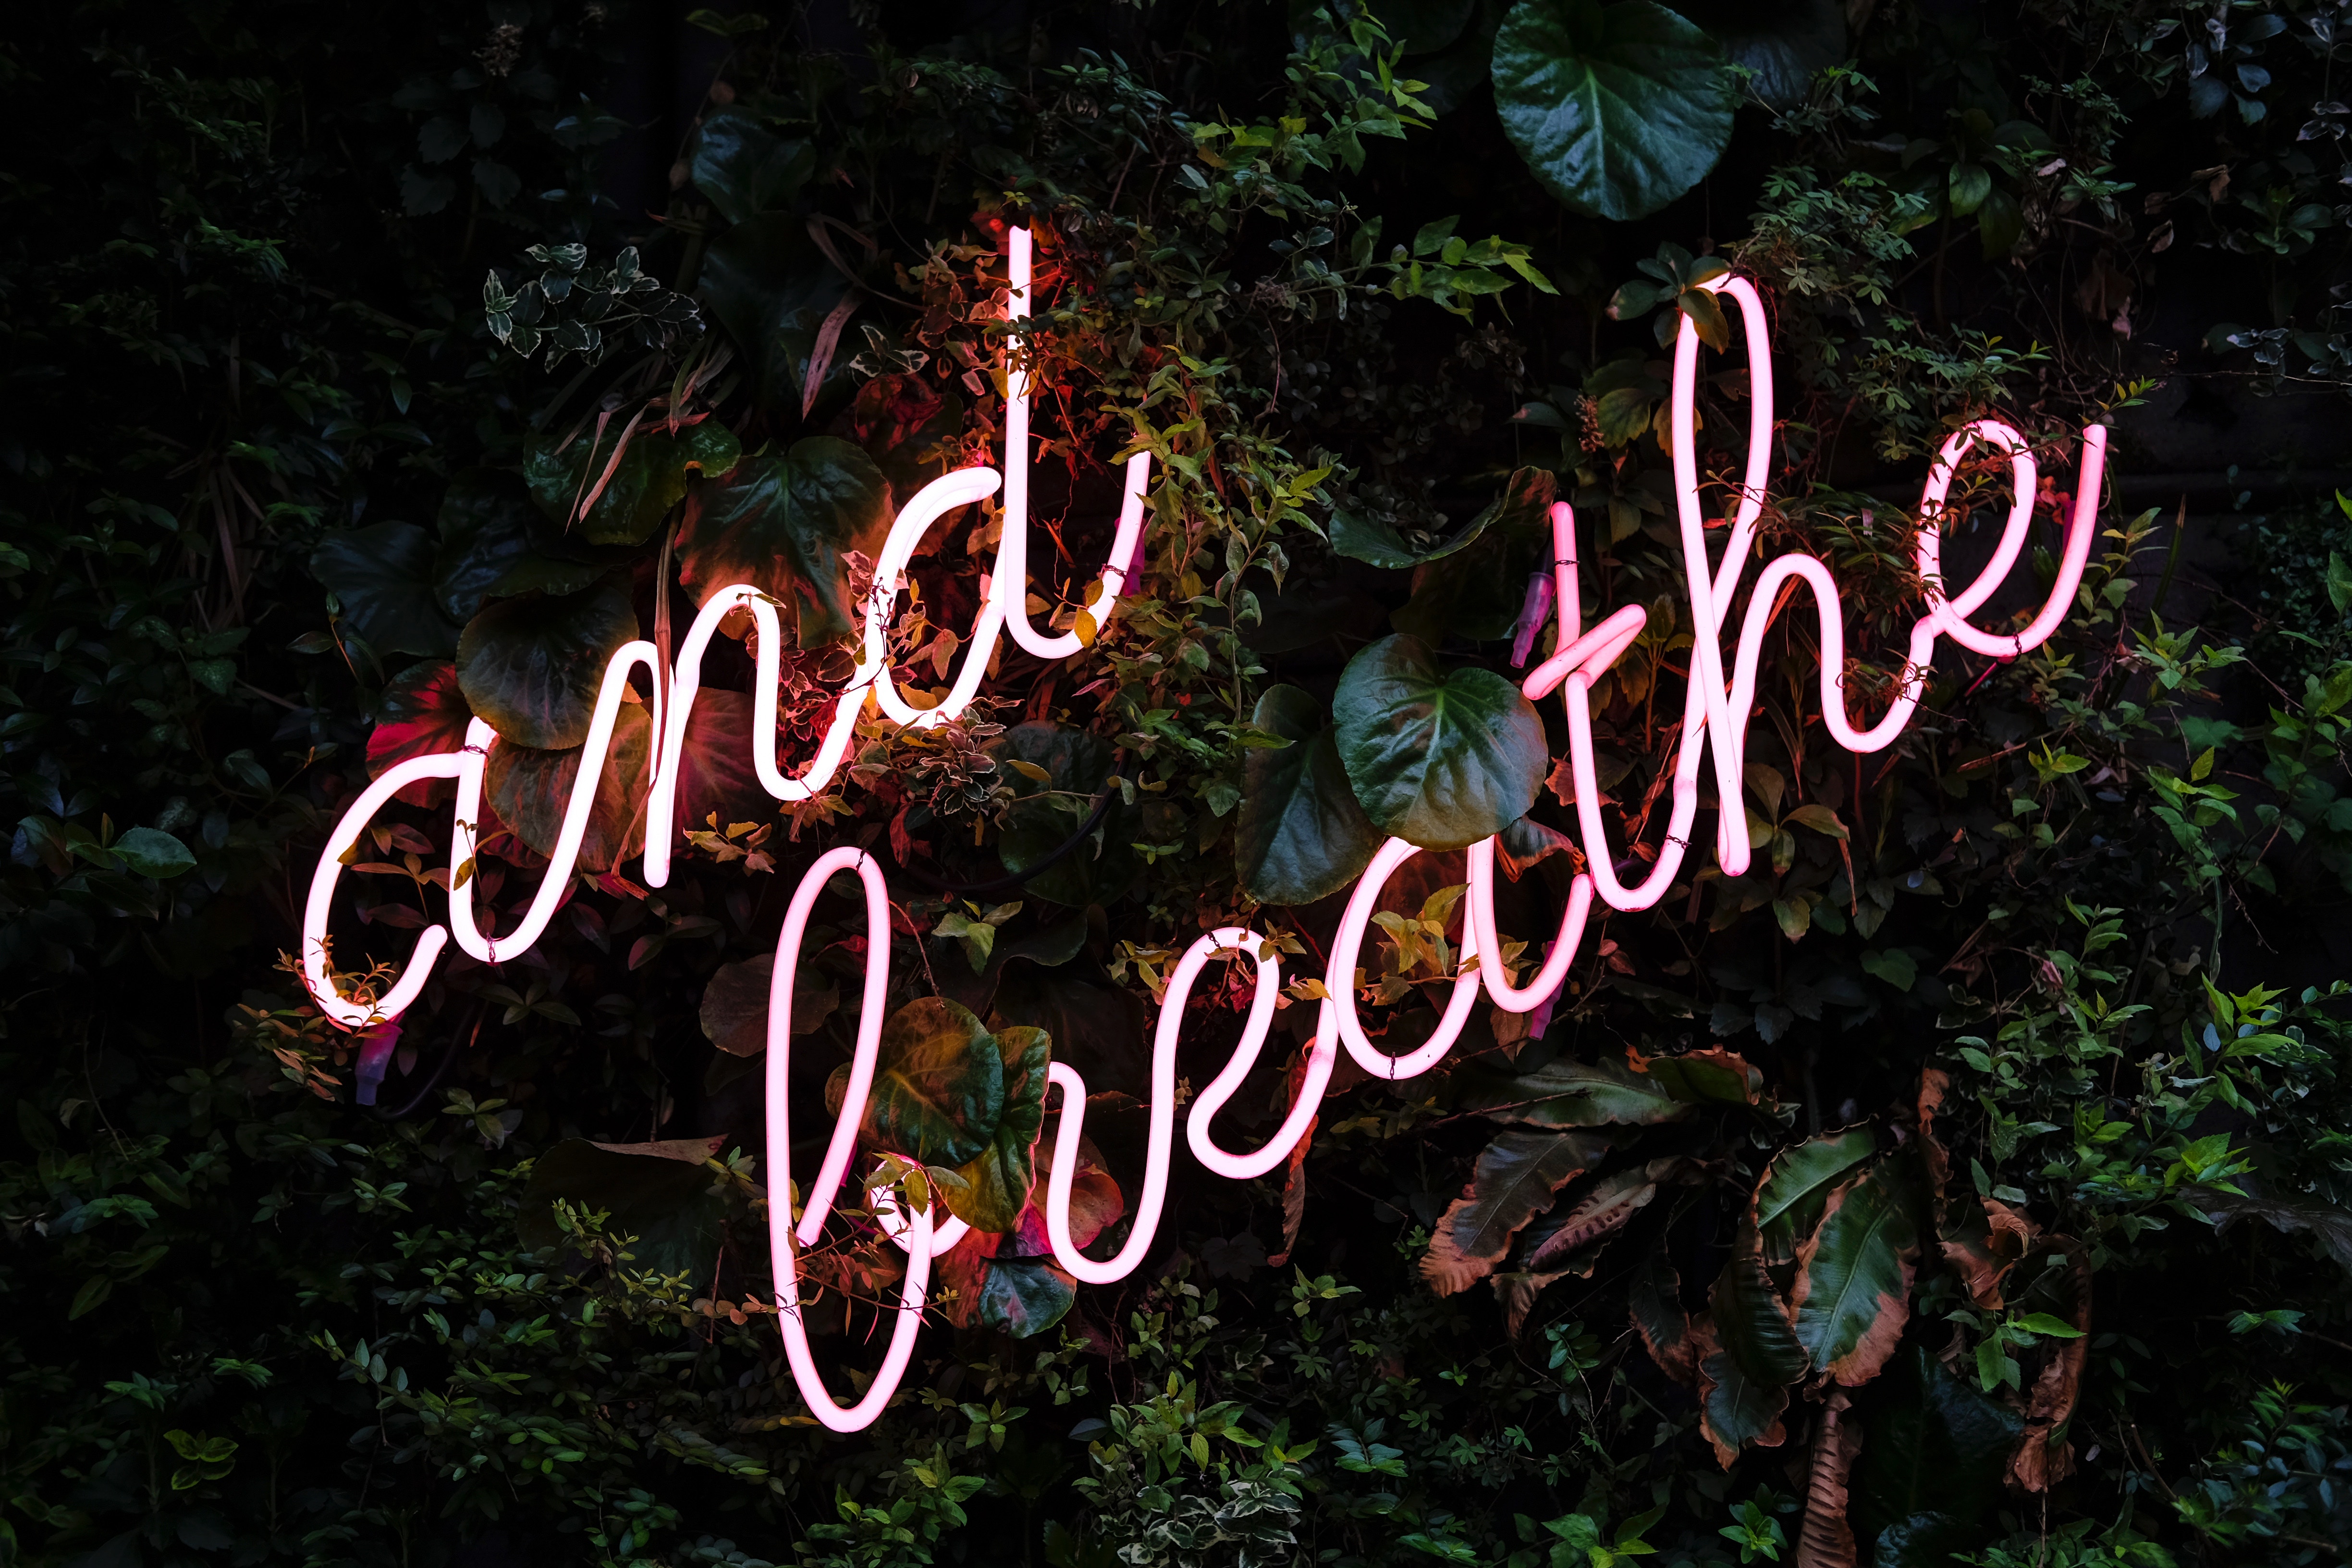 Stress kan je zelf reduceren door goed uit te ademen. Met deze ademhalingsoefeningen voor stress vermindering kan je zelf aan de gang >